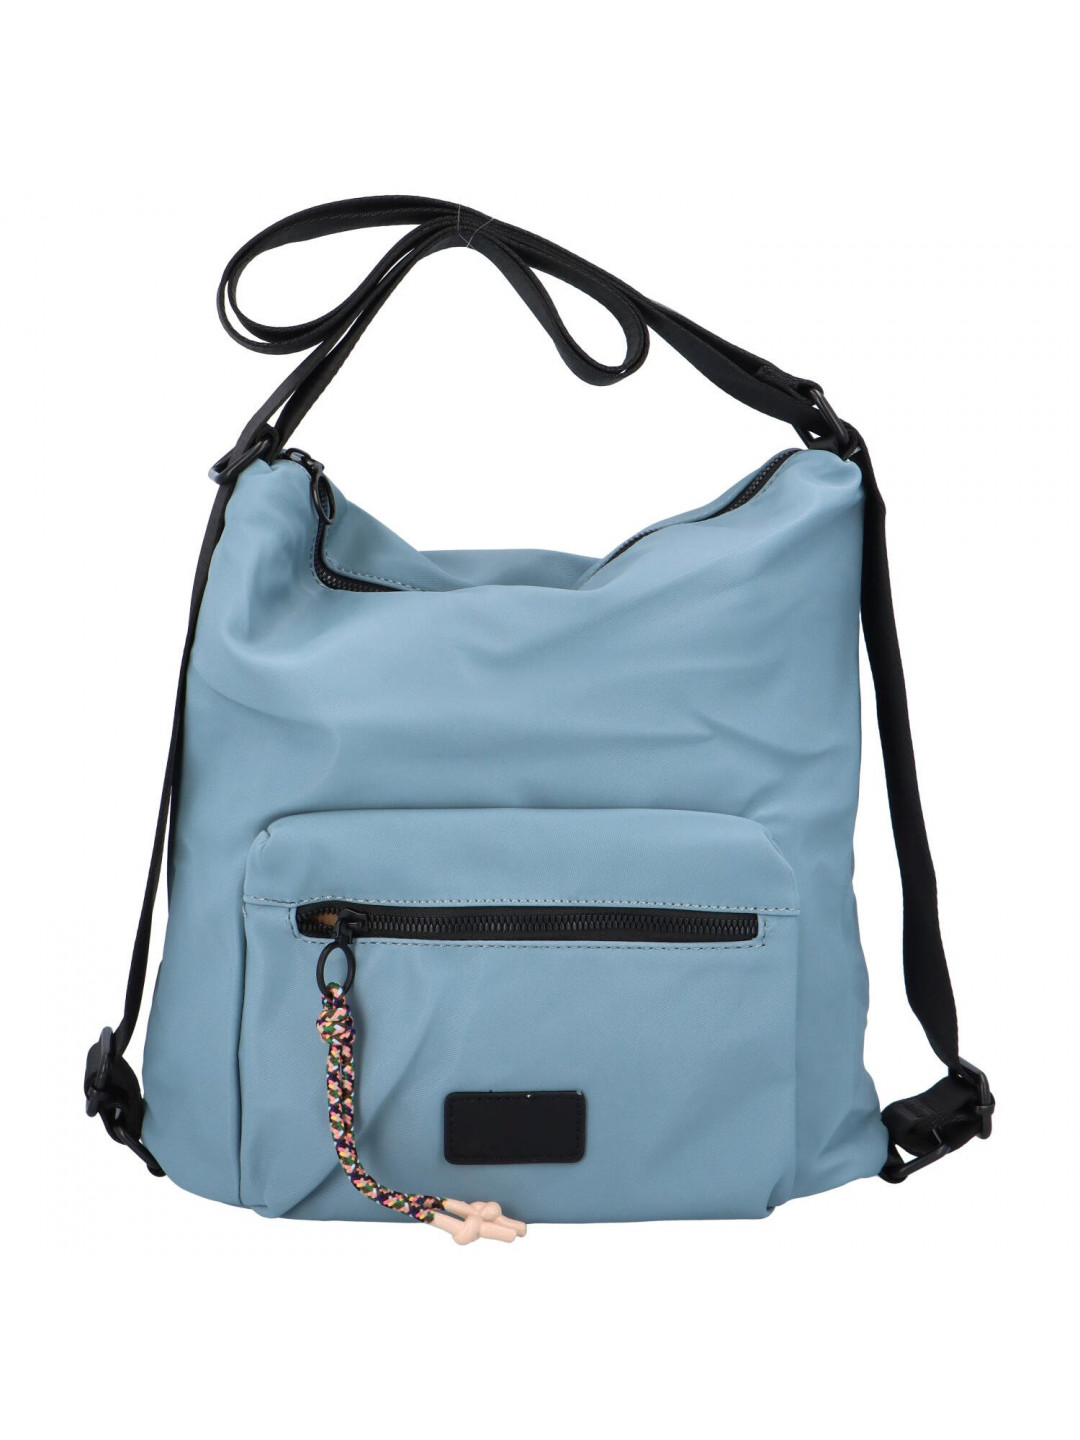 Volnočasová dámská lehká kabelka batoh Pura světle modrá